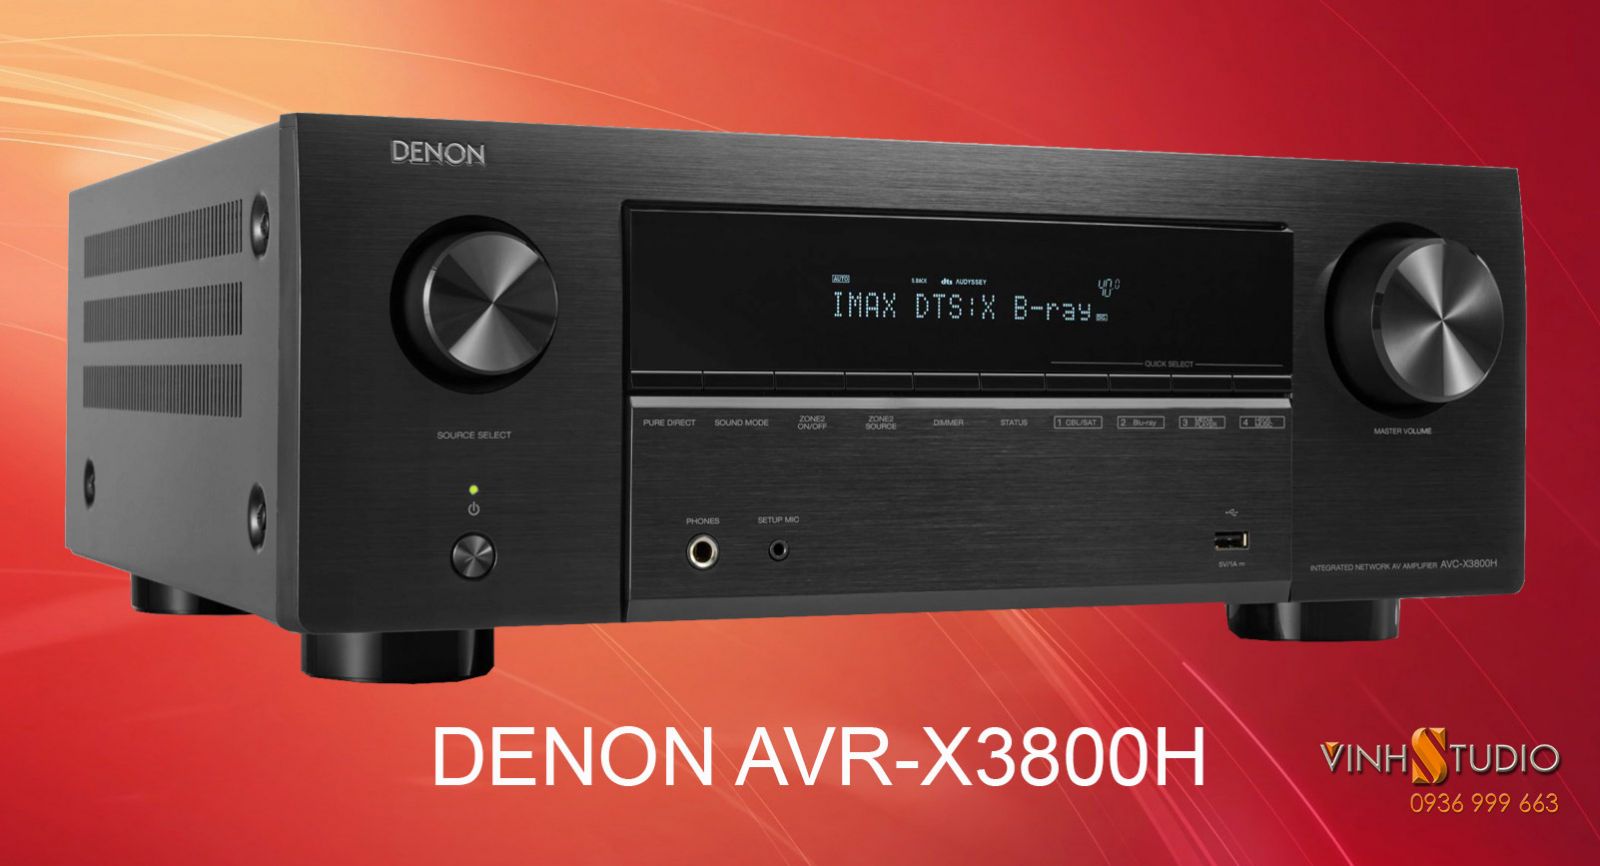 Ampli Denon AVR-X3800H giá rẻ nhất Hà Nội sẵn hàng tại Vinhstudio